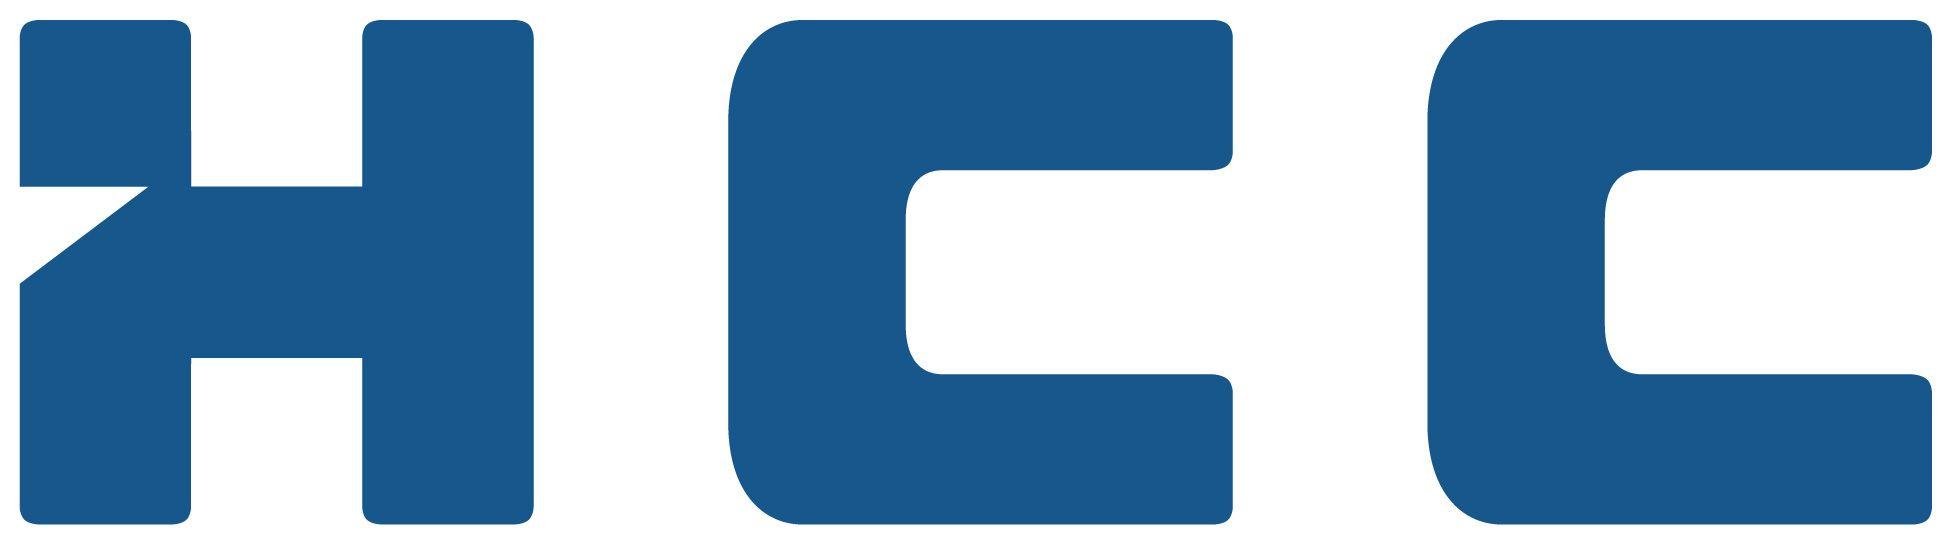 HCC Logo - Hcc Logos